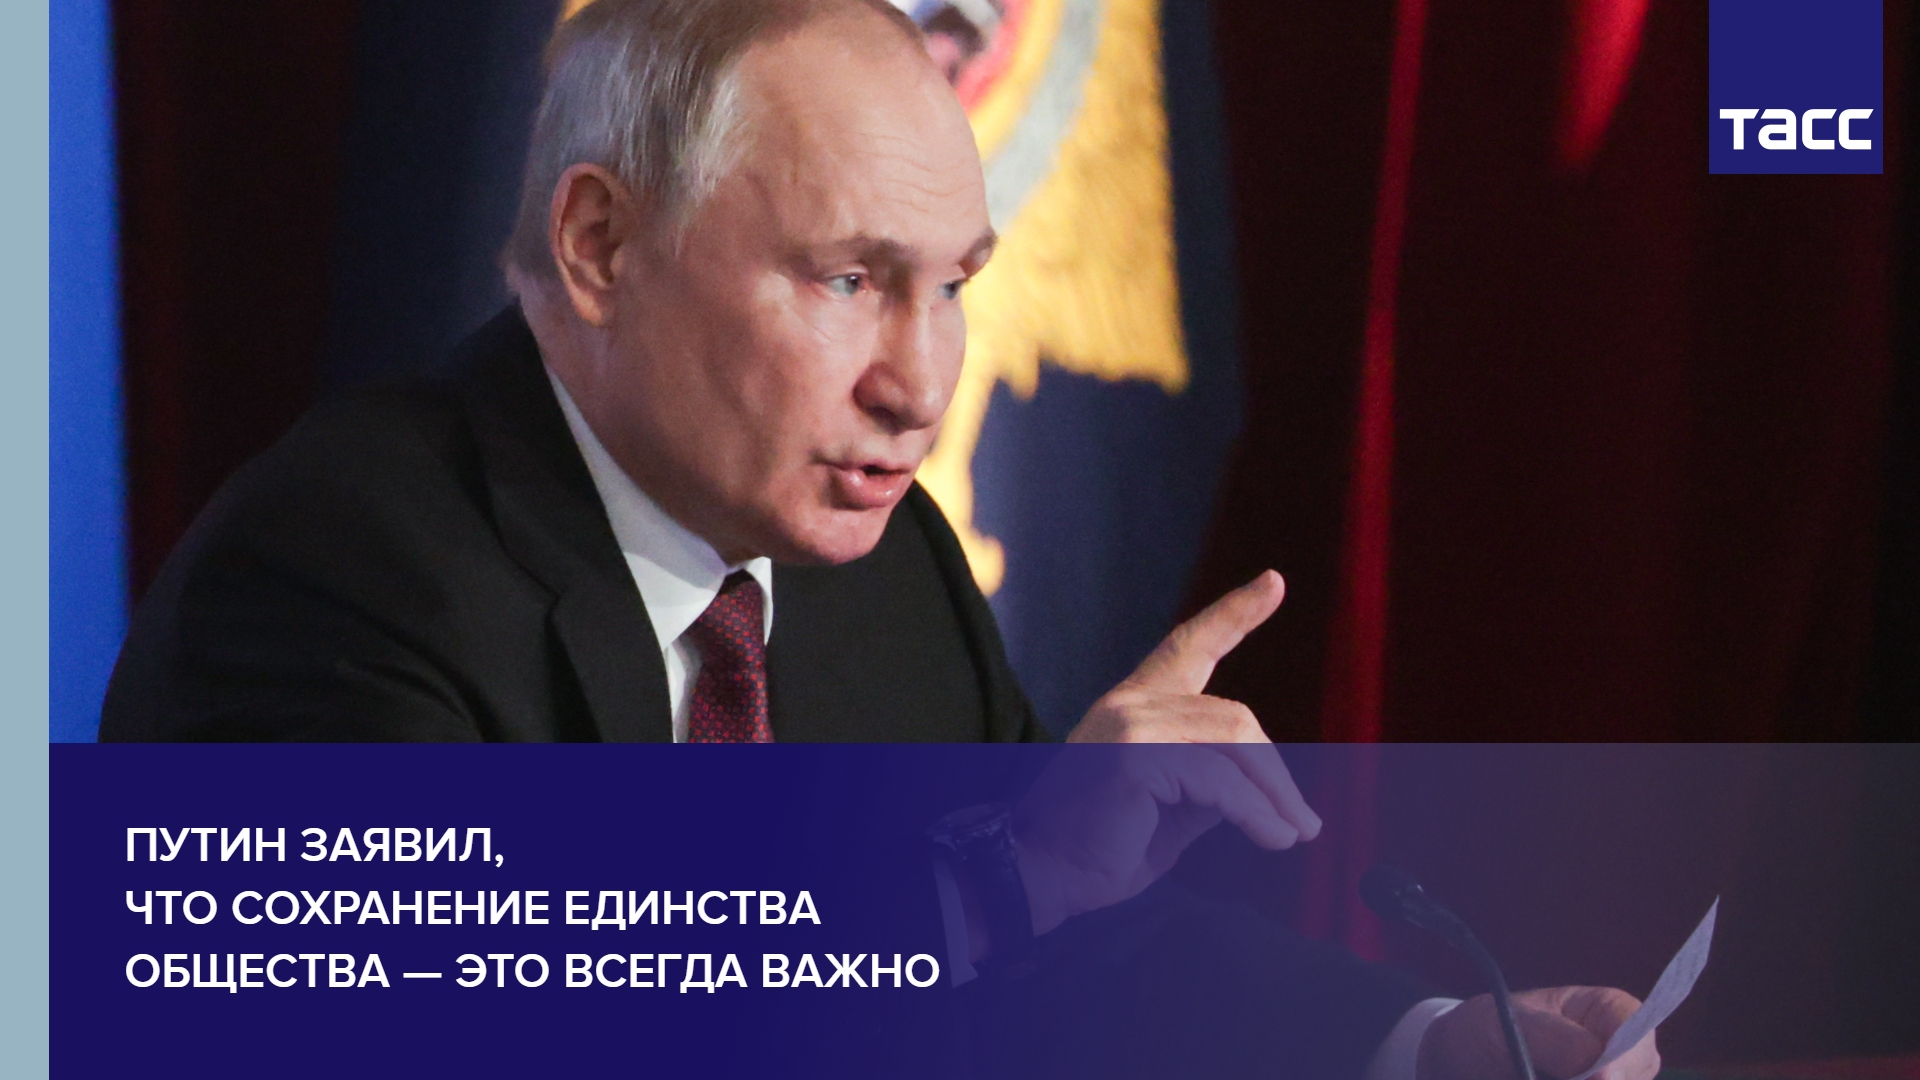 Путин заявил, что сохранение единства общества — это всегда важно